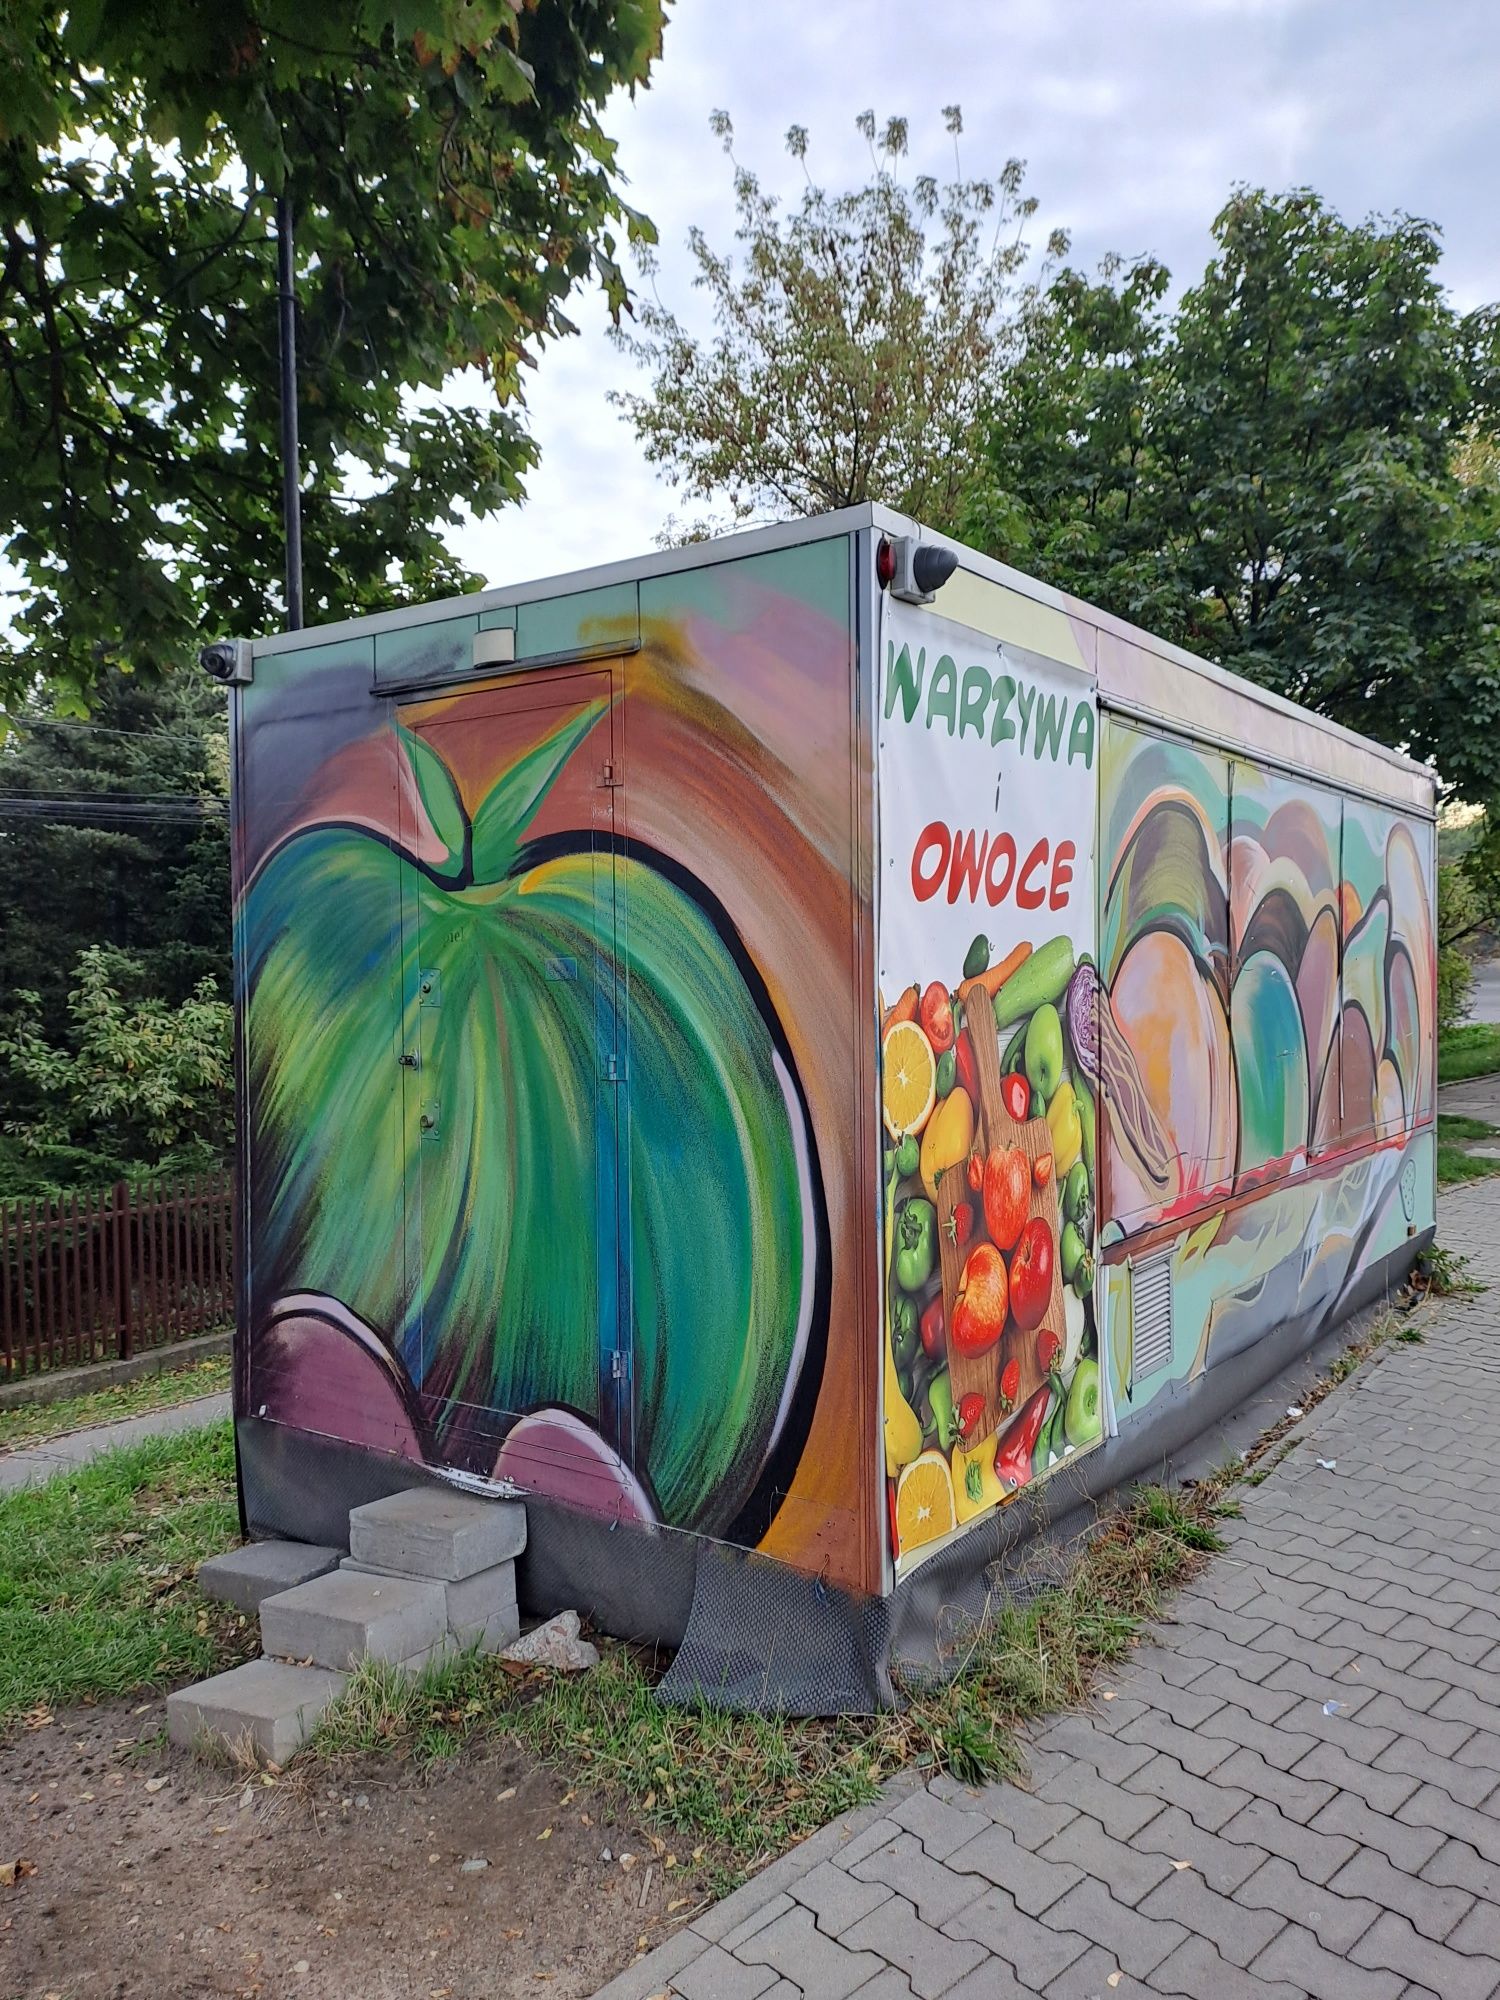 Odstąpie Lokal kiosk owocowo-warzywny